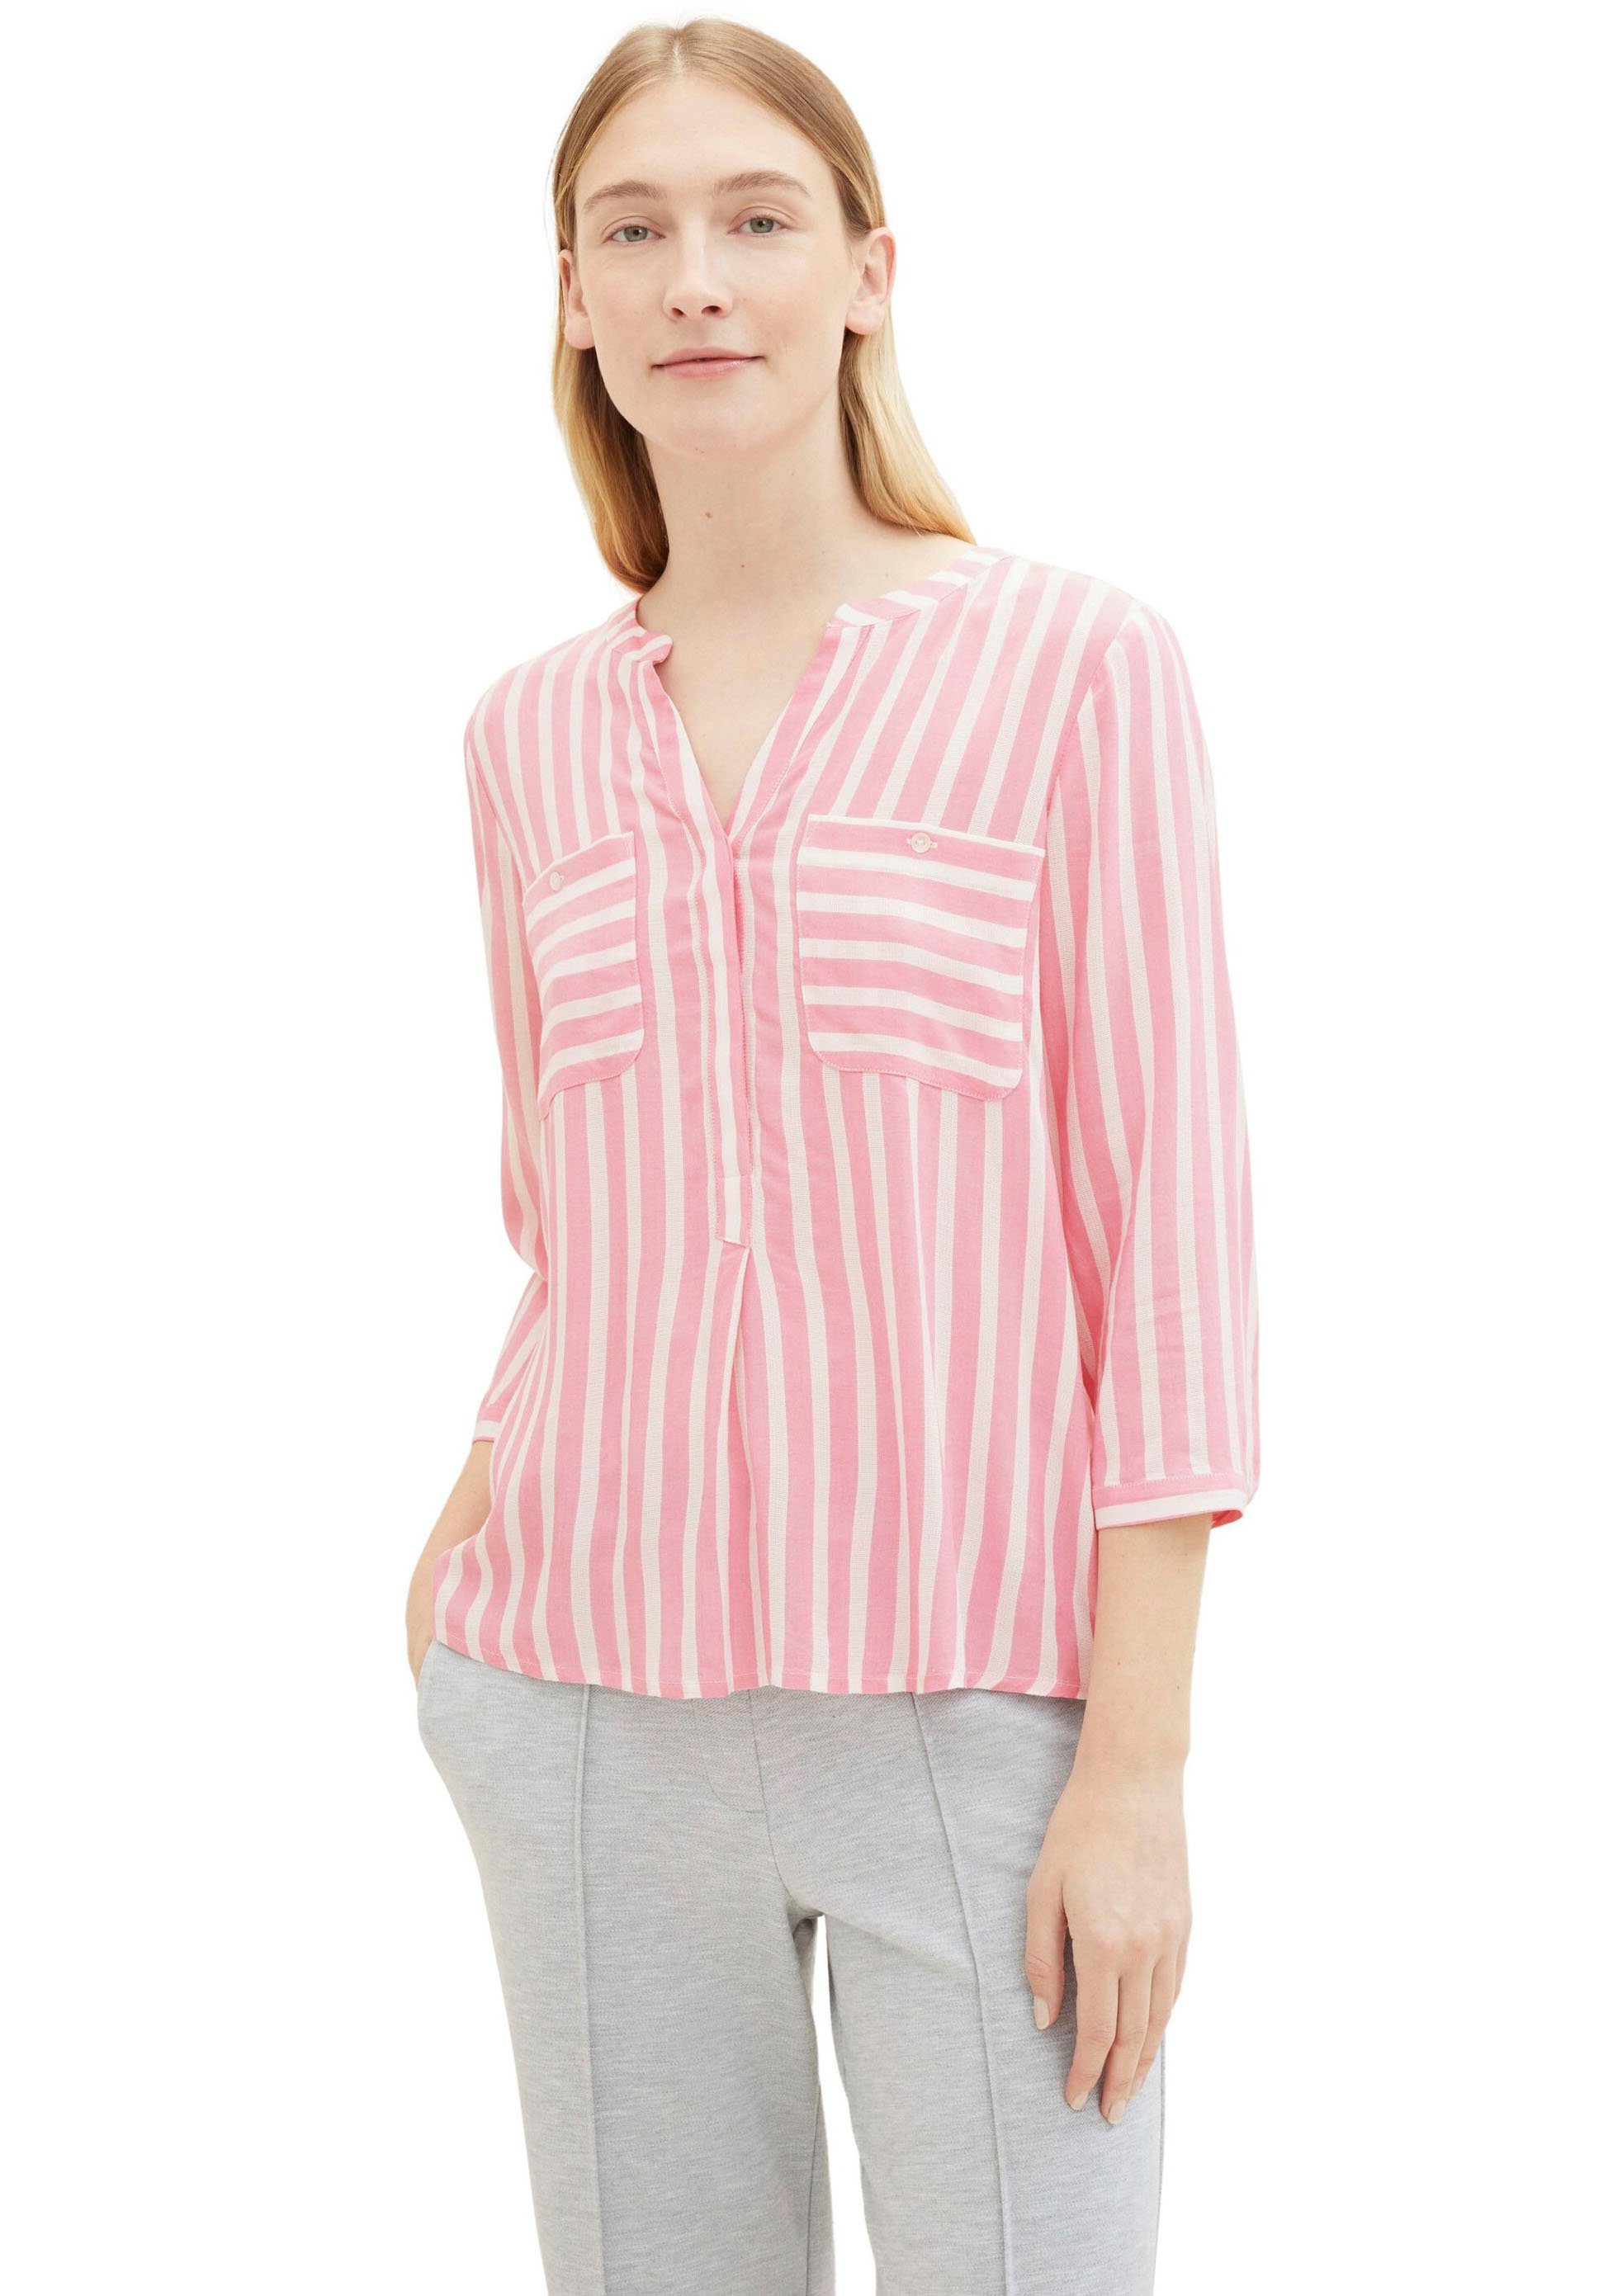 Rosa OPUS Blusen für Damen kaufen » Pinke OPUS Blusen | OTTO